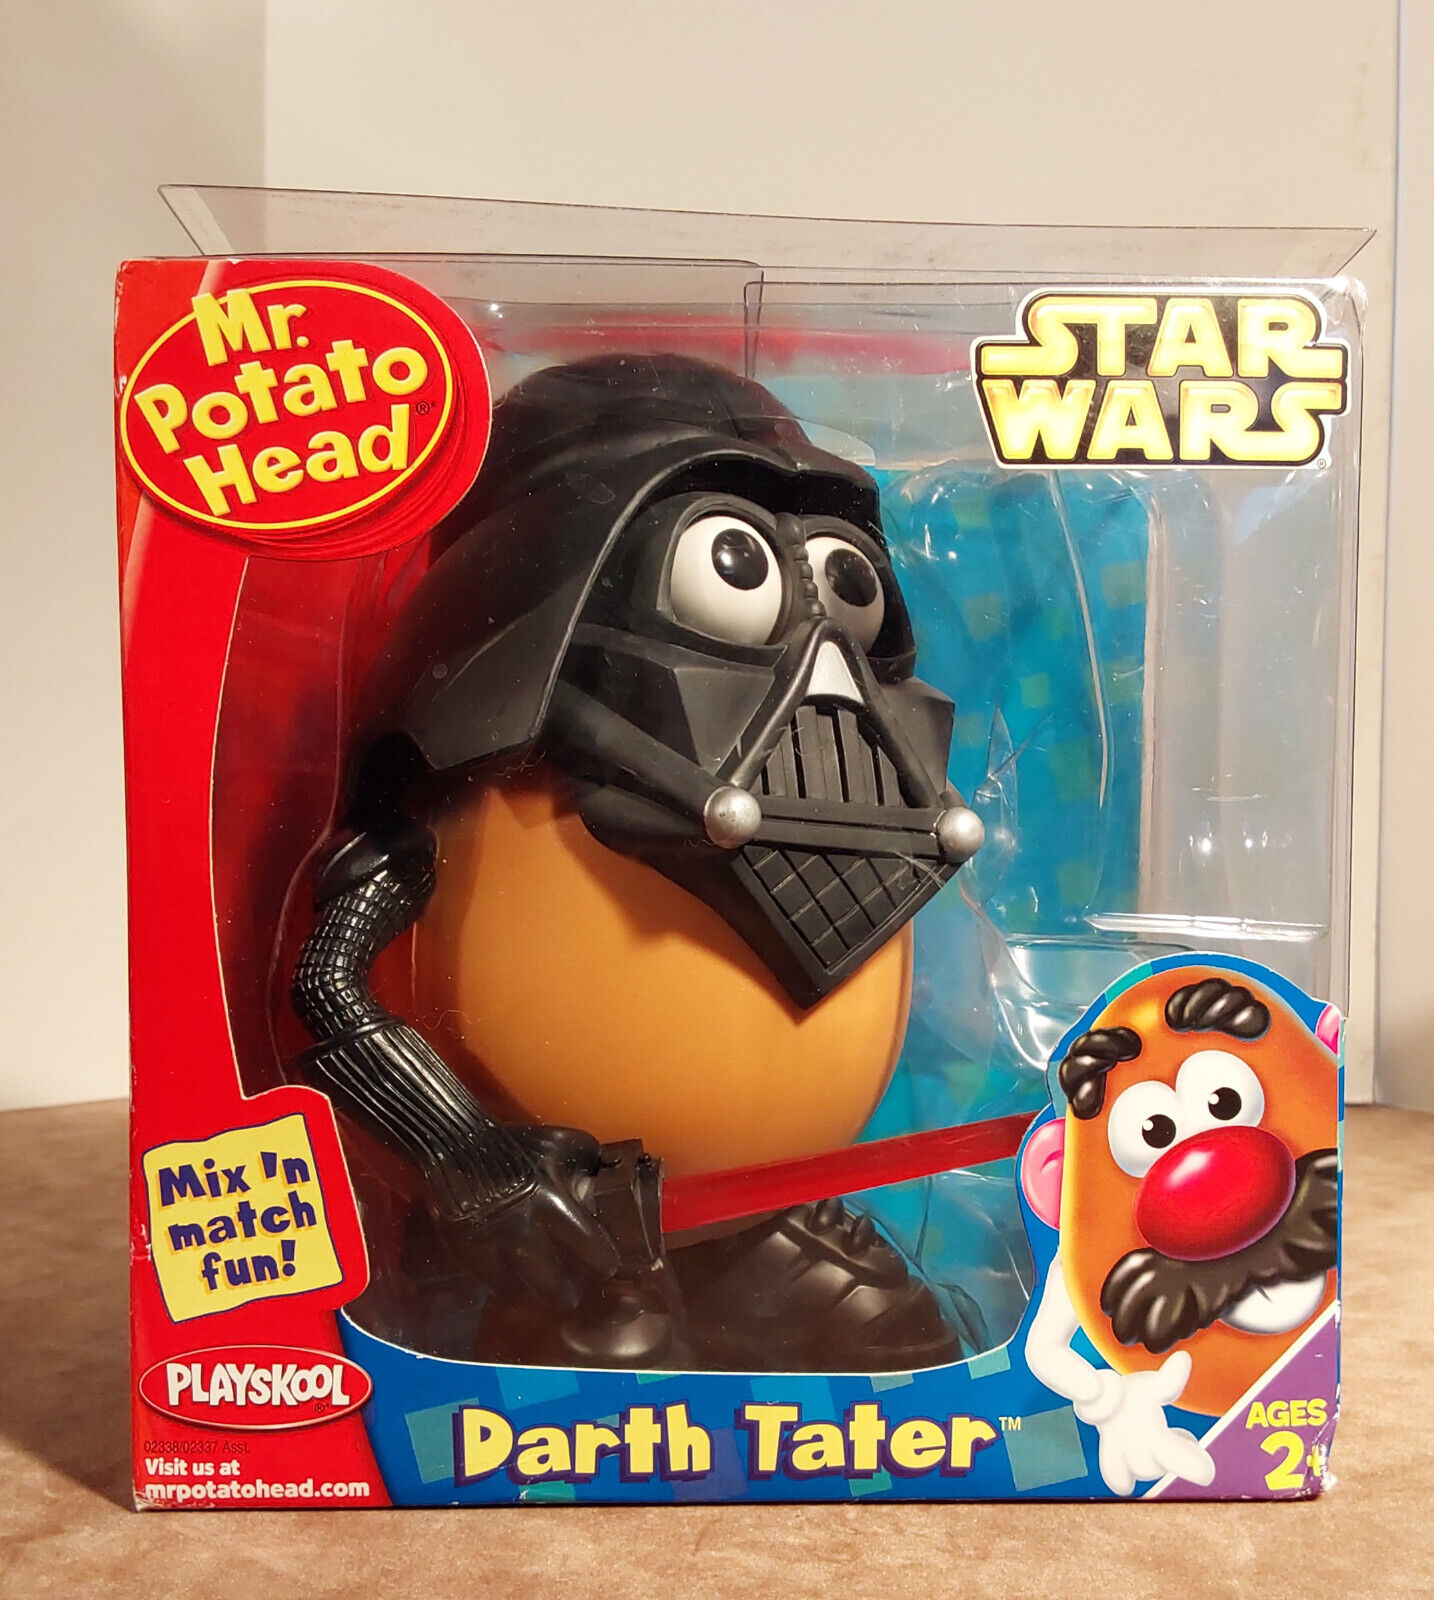 Darth Tater - Mr. Potato Head - Star Wars - Playskool - Hasbro - 2004